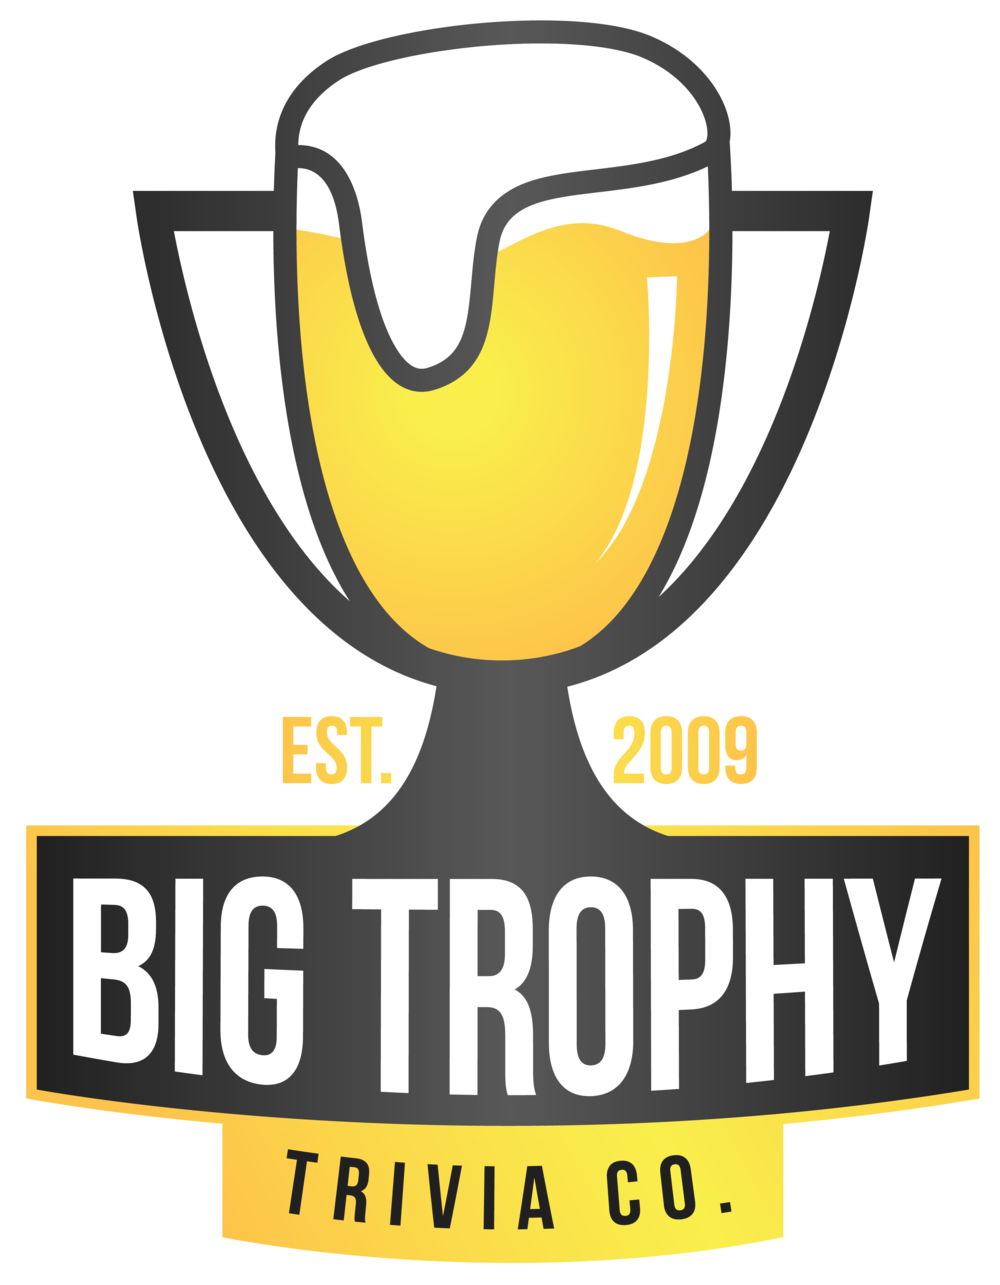 Big Trophy Trivia Company